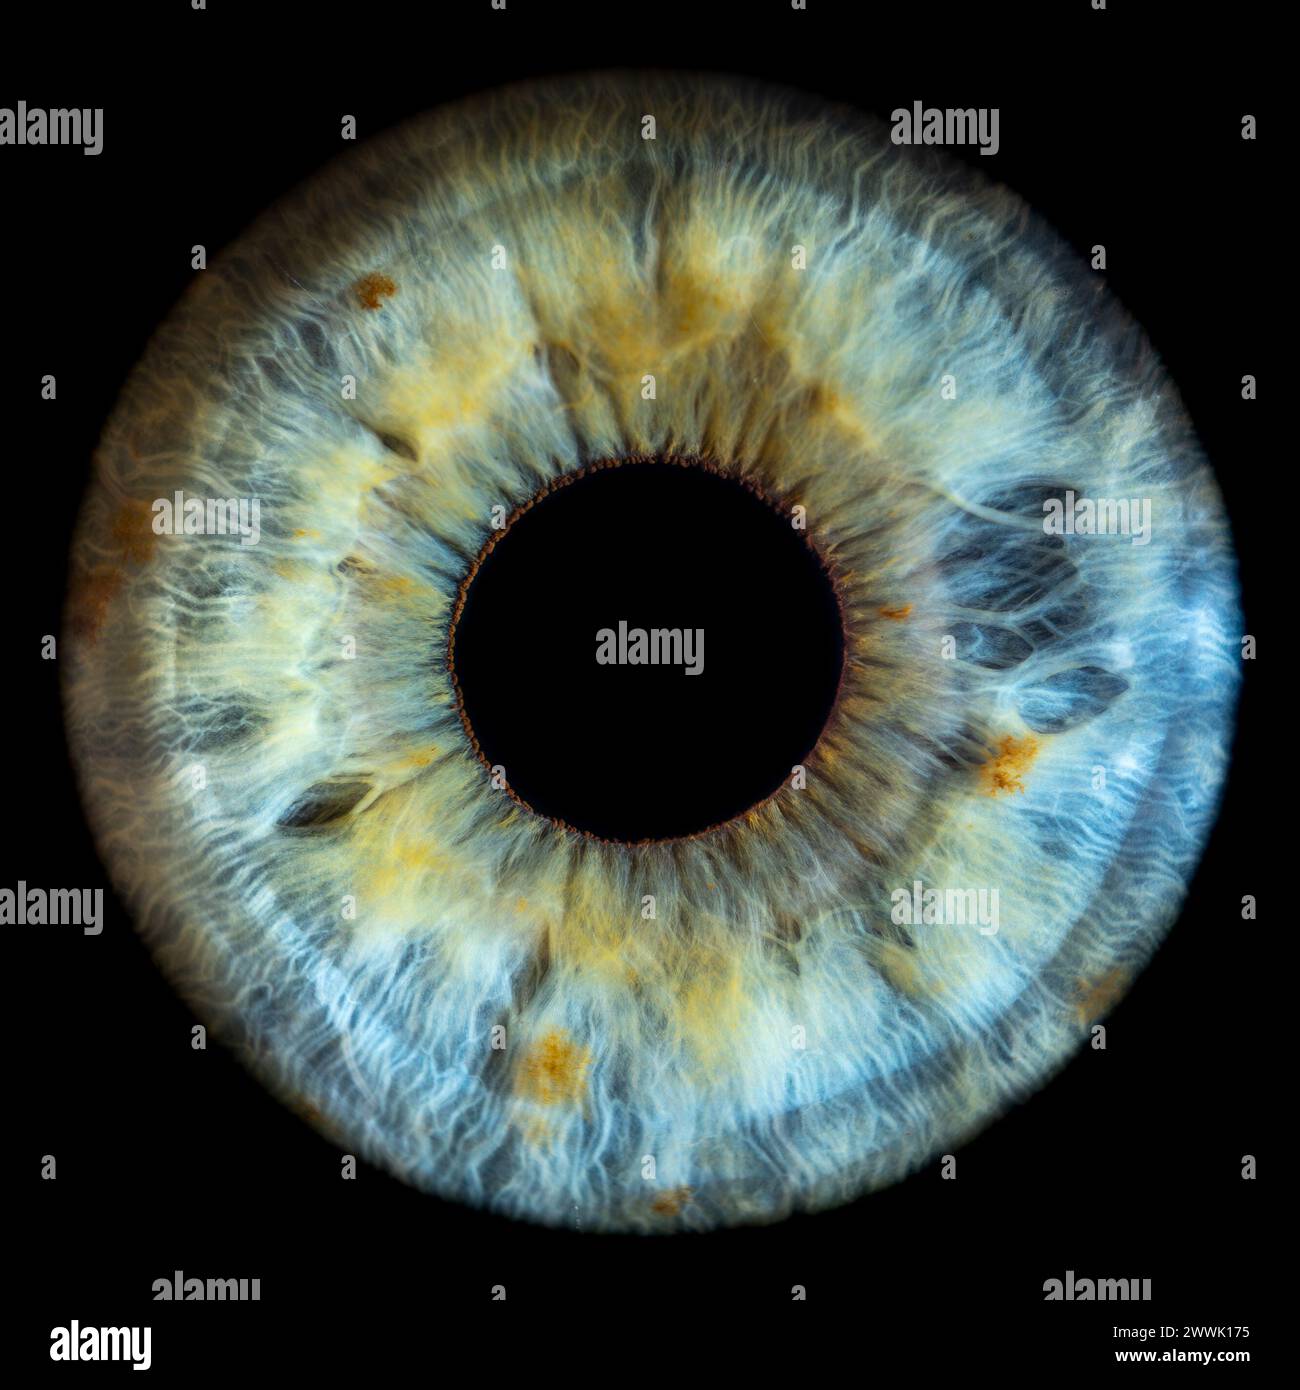 Beschreibung: Makrofoto des menschlichen Auges auf schwarzem Hintergrund. Nahaufnahme eines blau-grünen weiblichen Auges mit gelben Flecken. Strukturelle Anatomie. Iris Detai Stockfoto